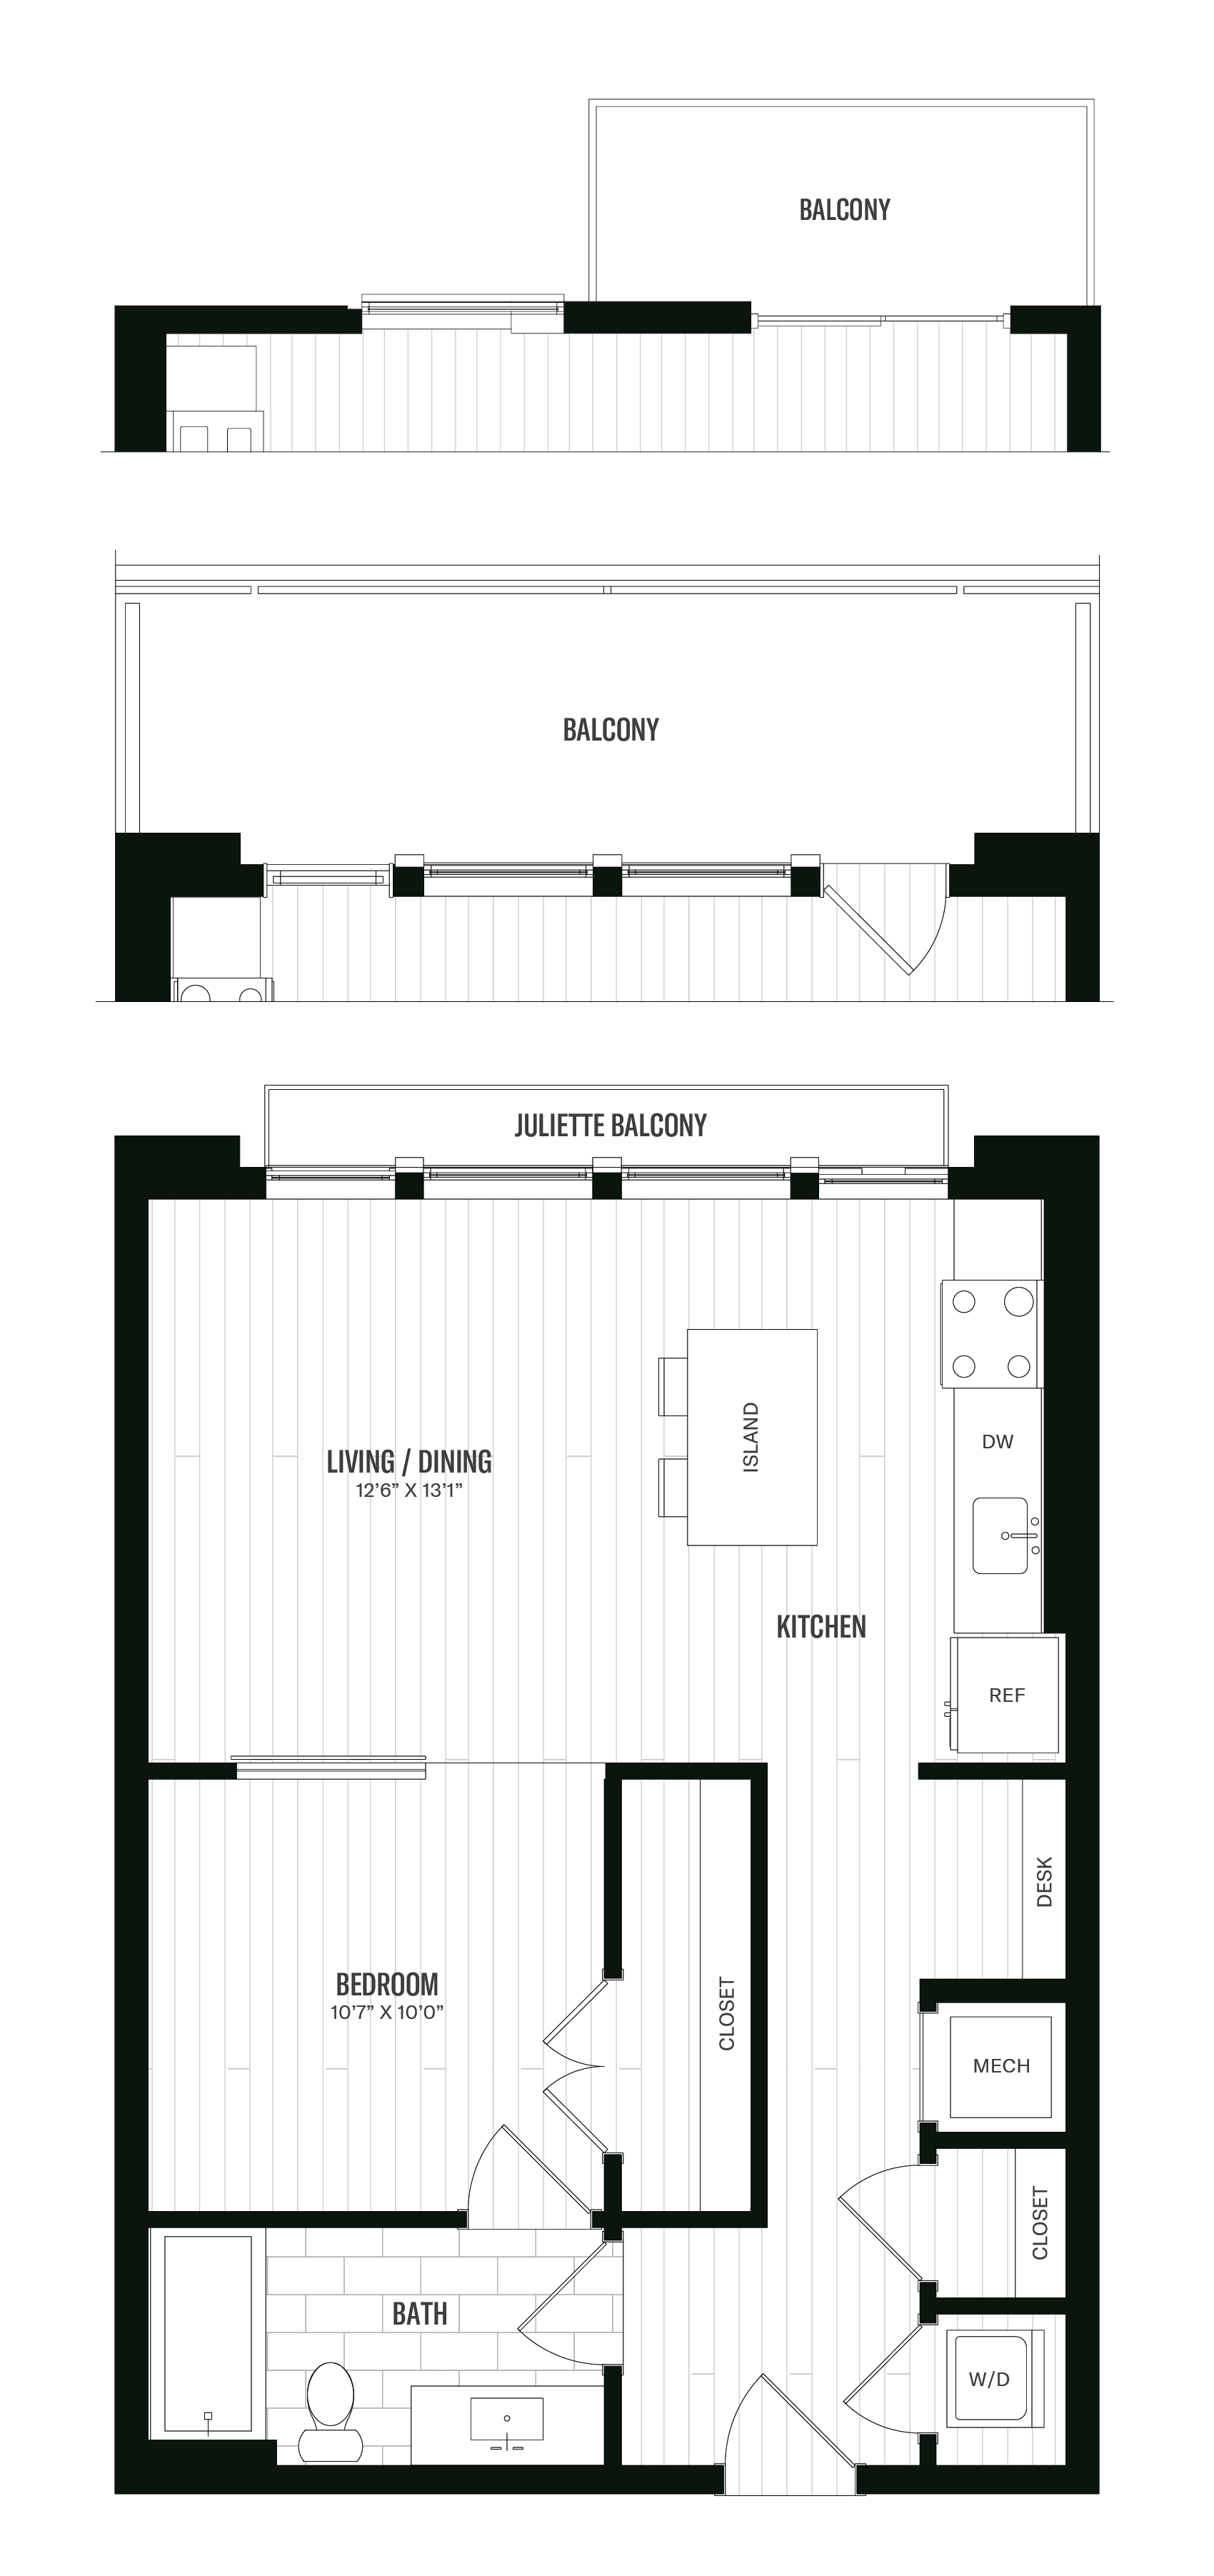 Floorplan image of unit 515